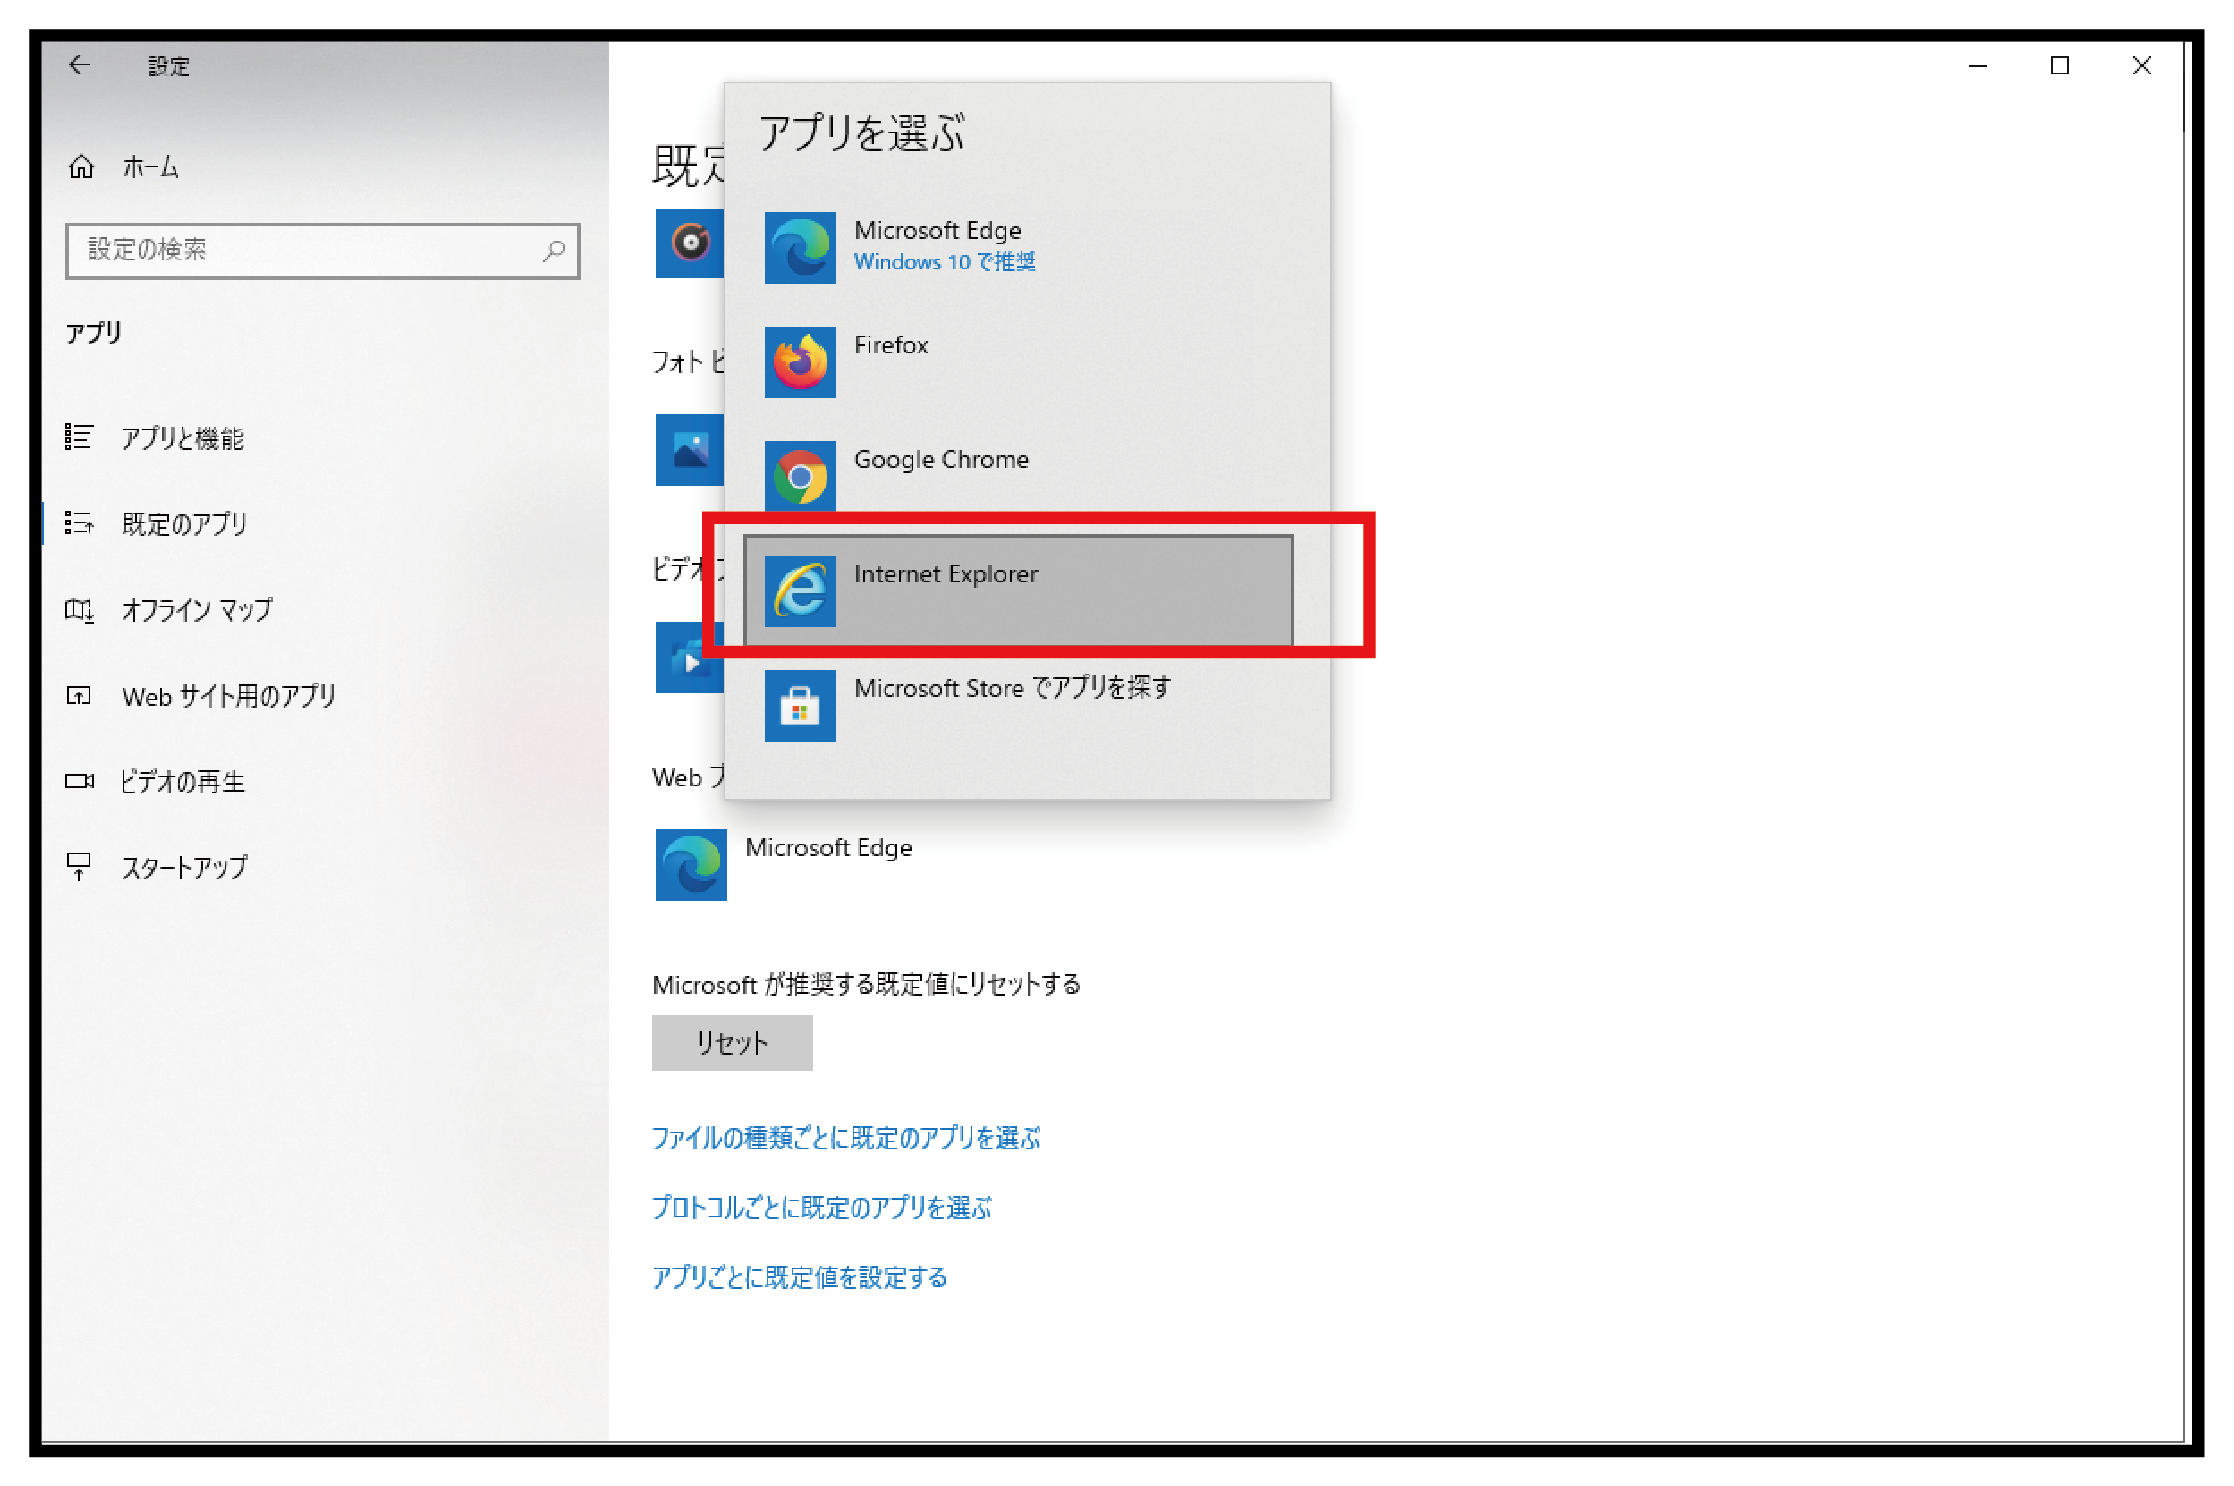 Windows10で Ie なくなった 使えなくなった を解決 ホームページ制作 名古屋 愛知 株式会社wwg ダブルダブルジー